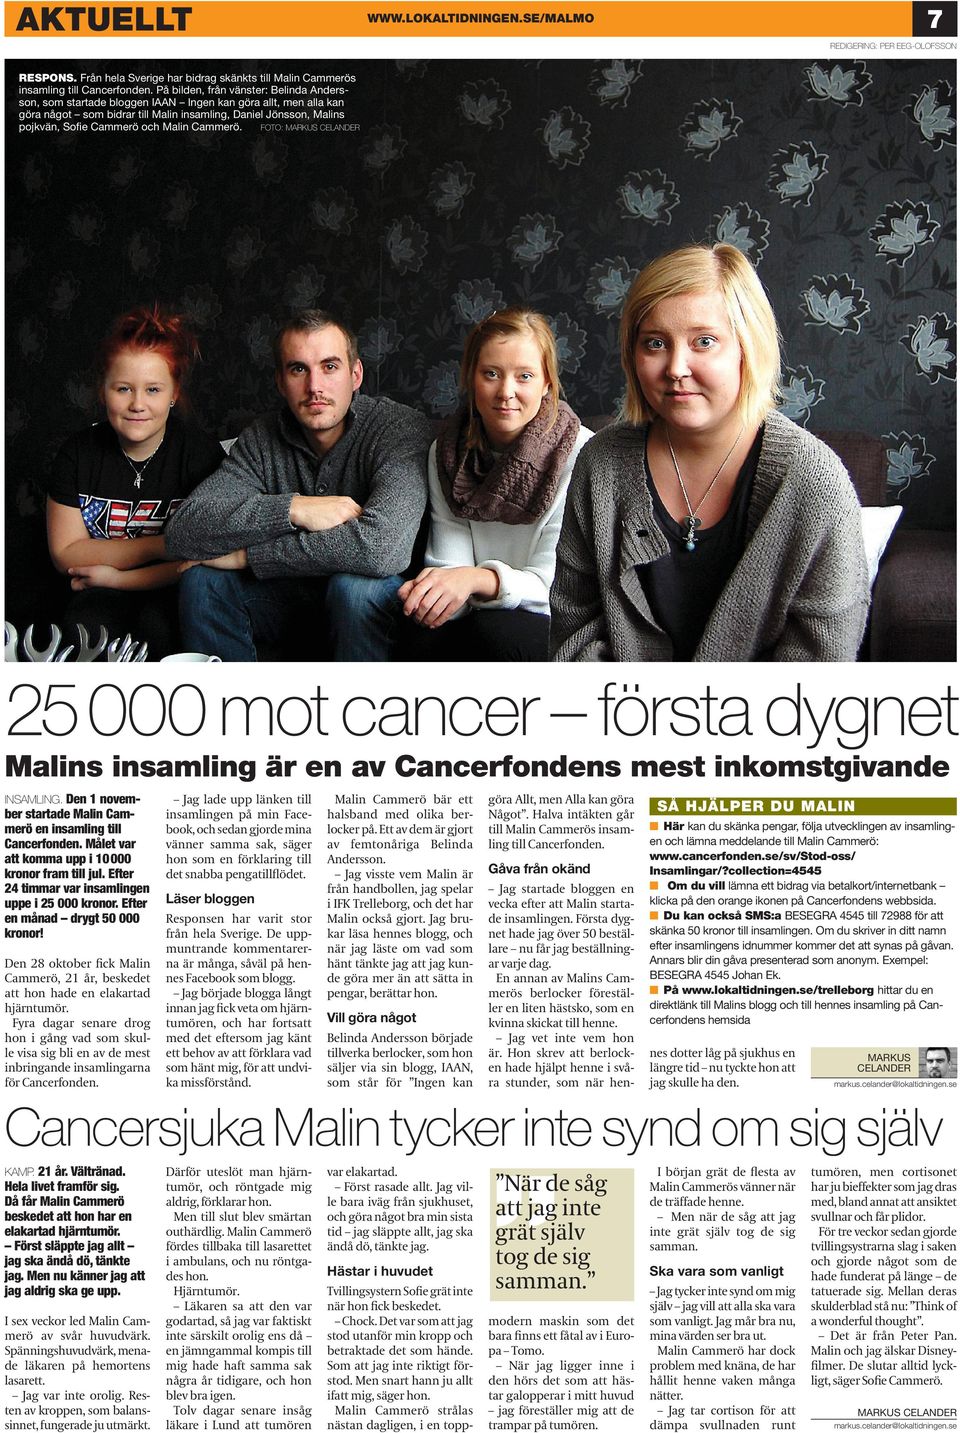 Malin Cammerö. FOTO: MARKUS CELANDER 000 mot cancer första dygnet Malins insamling är en av Cancerfondens mest inkomstgivande INSAMLING.